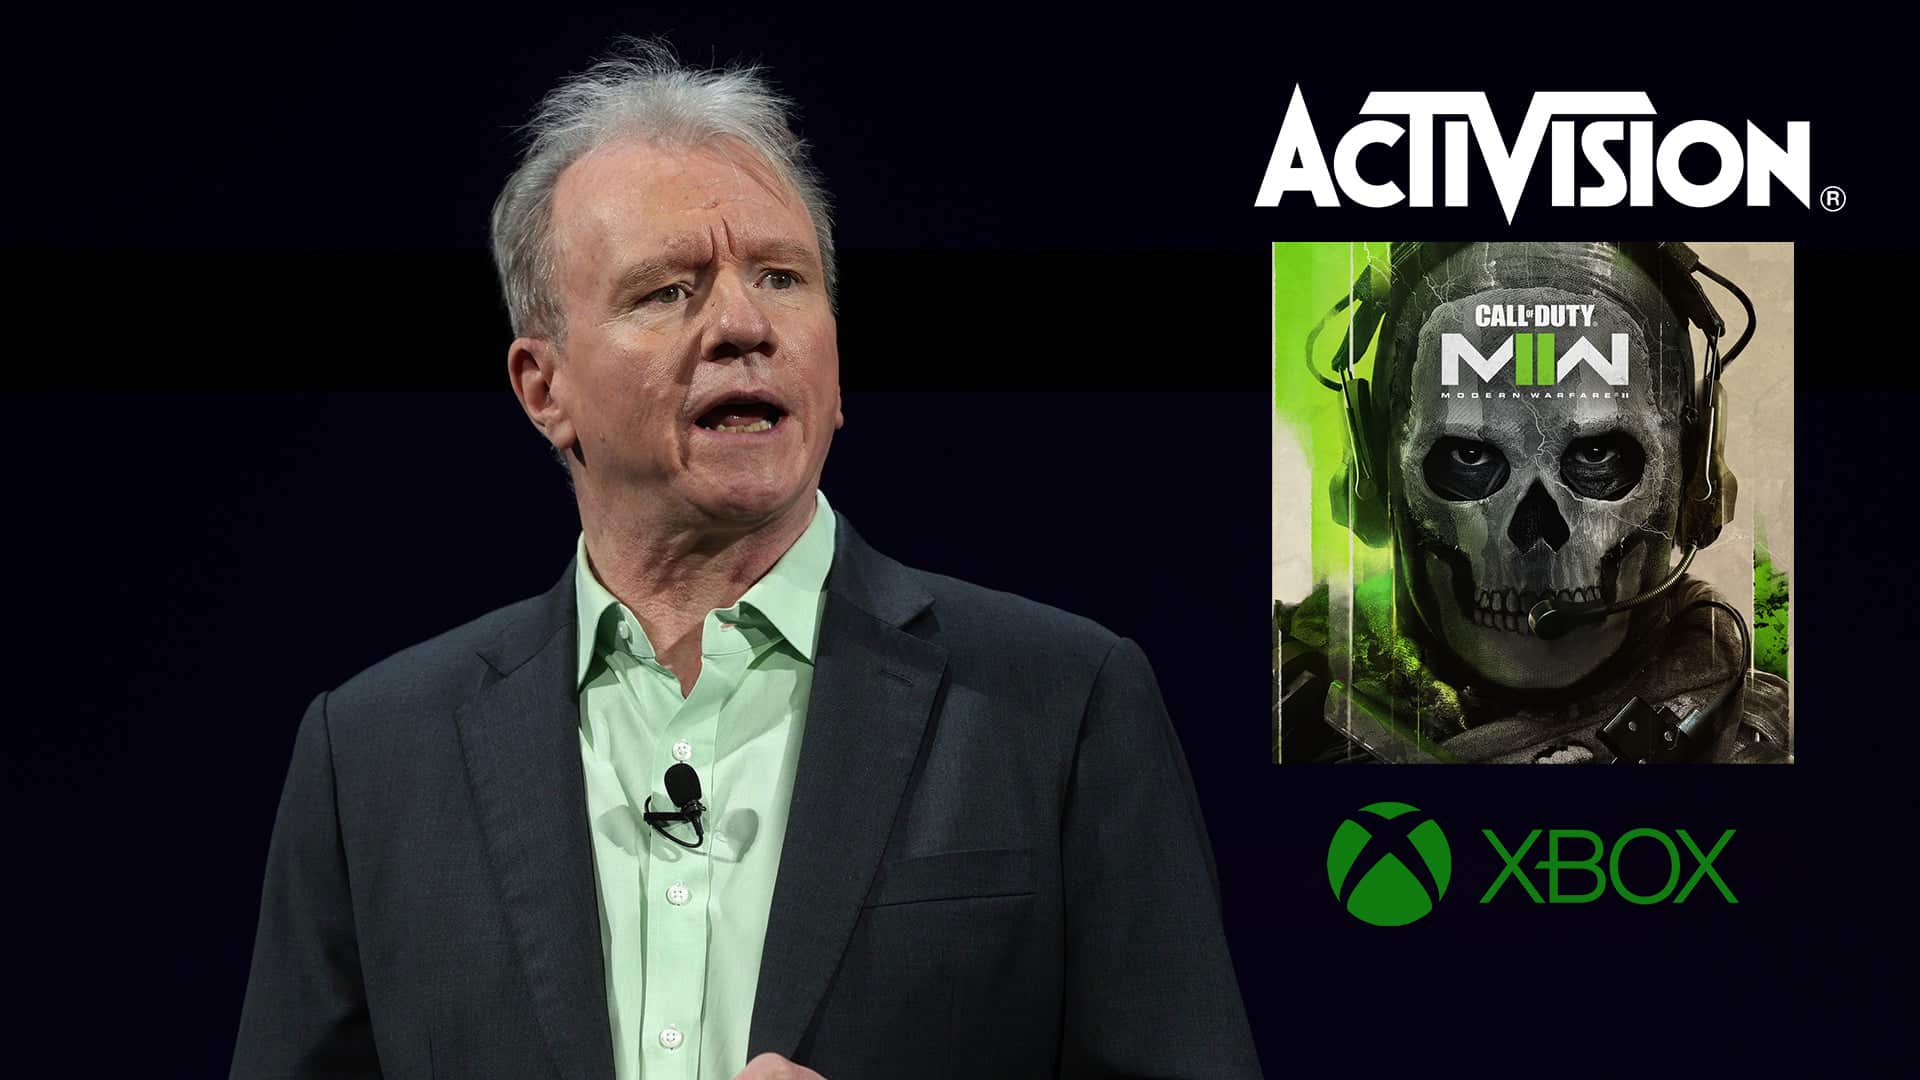 Jim Ryan CEO de Sony viajó a Bruselas para intentar detener el acuerdo de Xbox con Activision, GamersRD